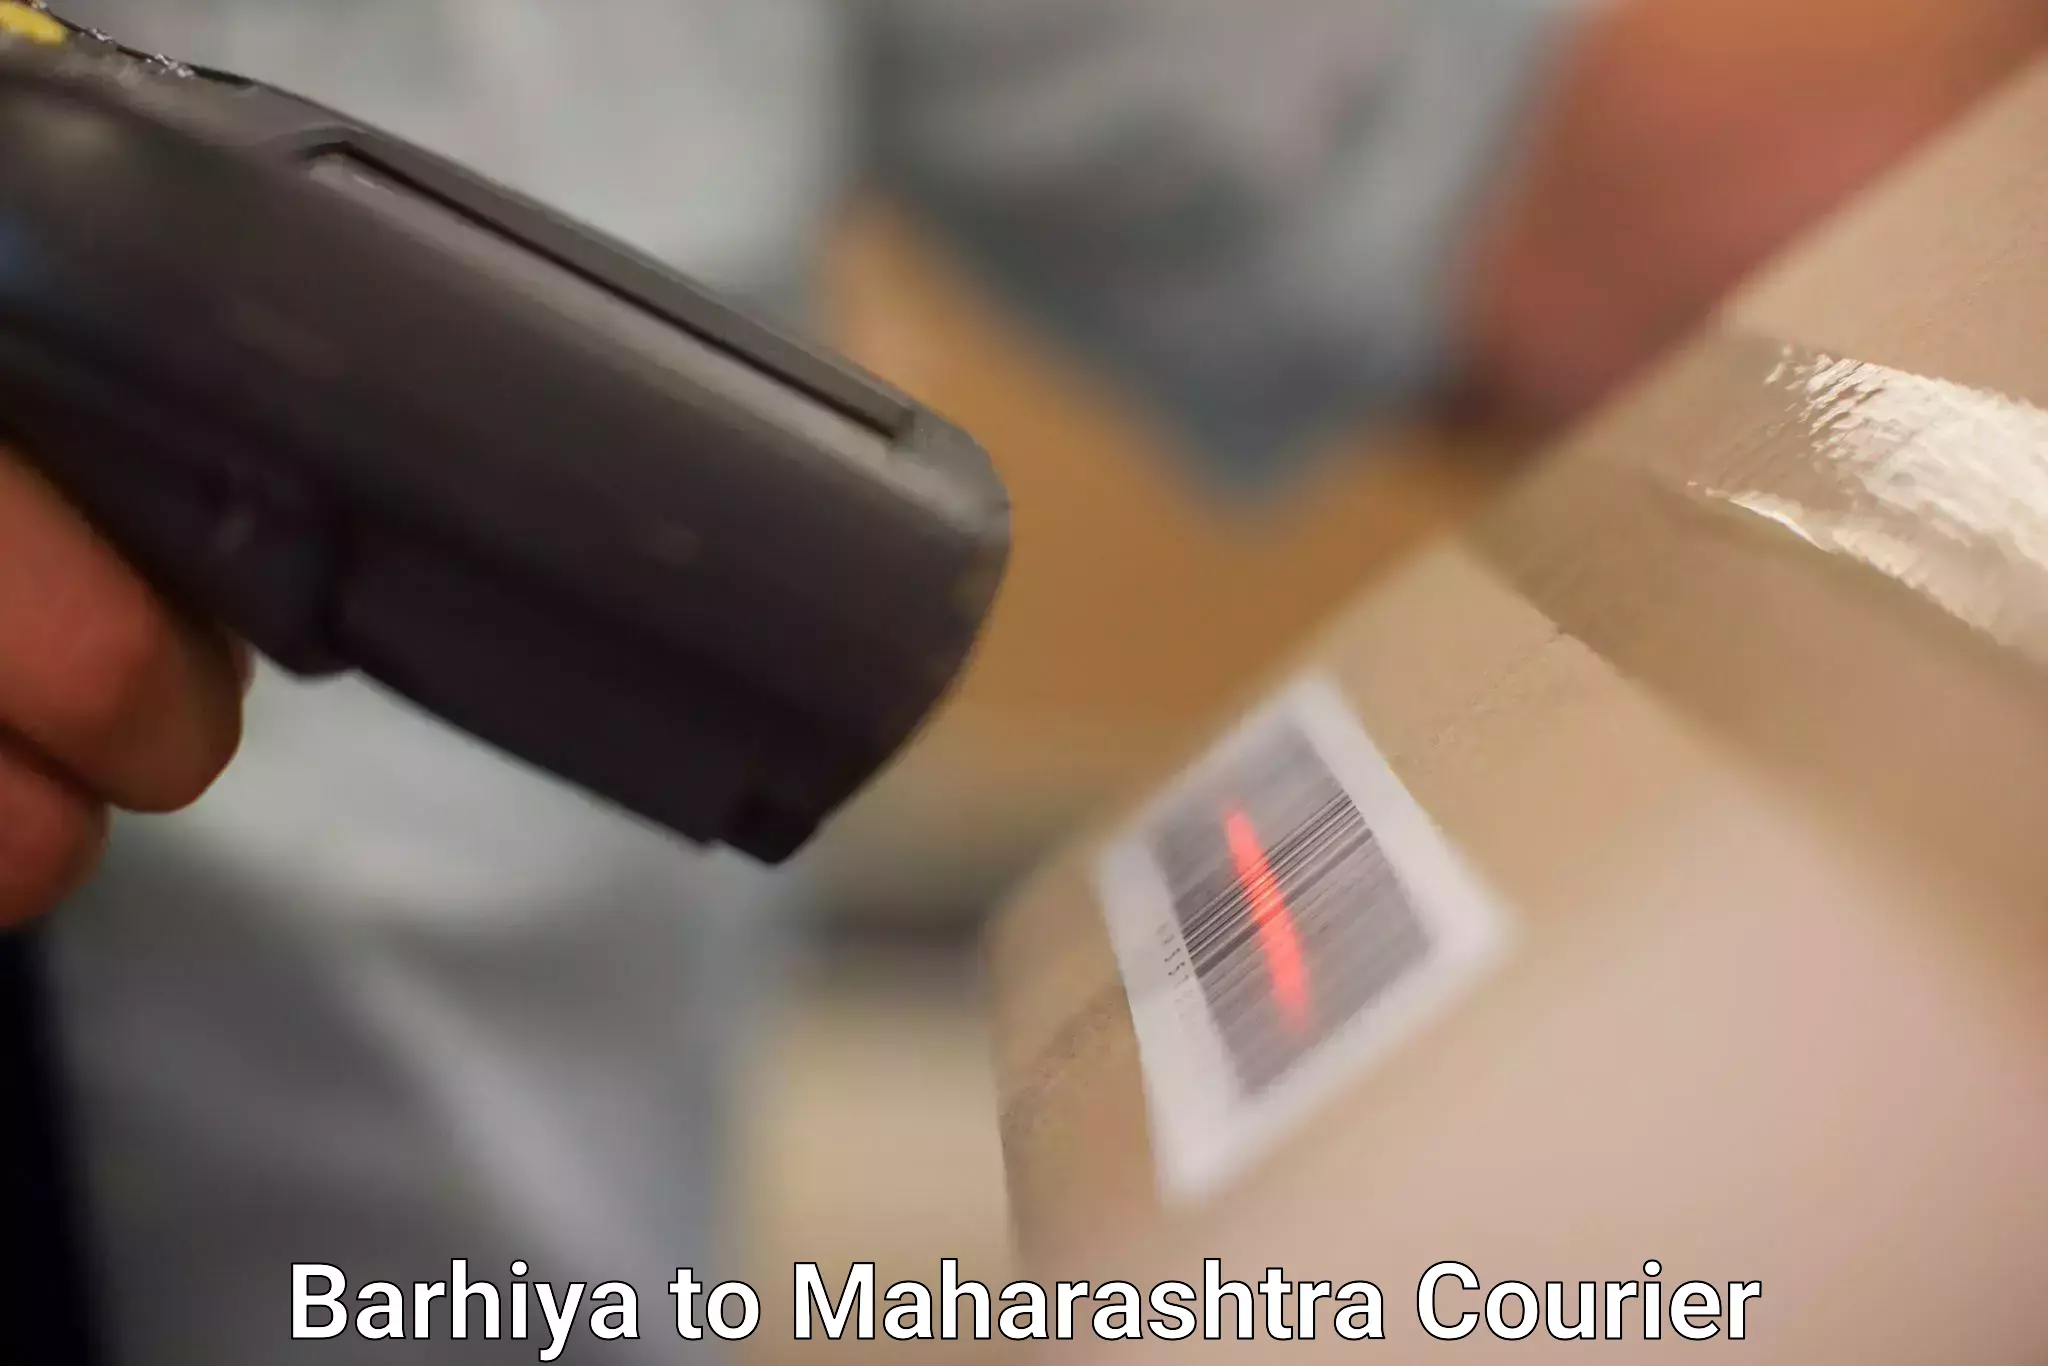 Courier service partnerships Barhiya to Sinnar